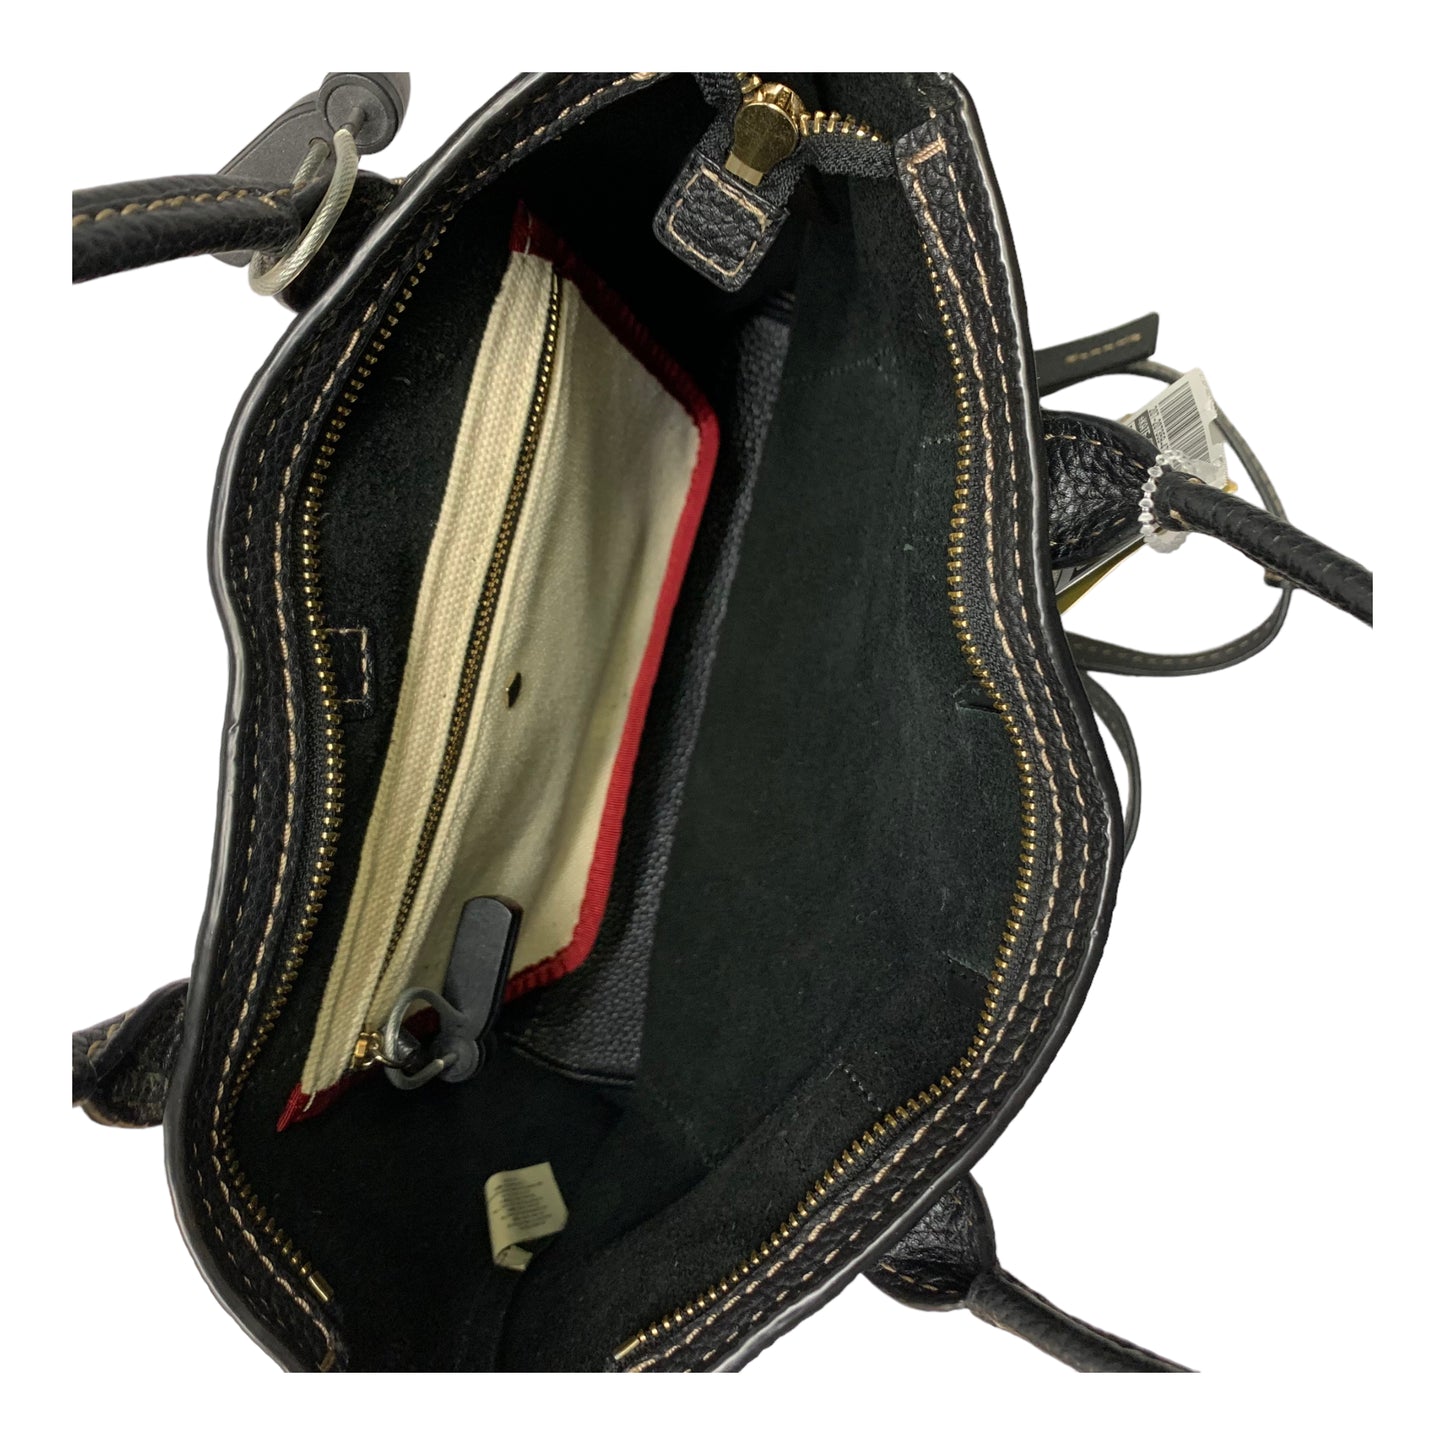 Backpack Designer By Kate Spade  Size: Medium